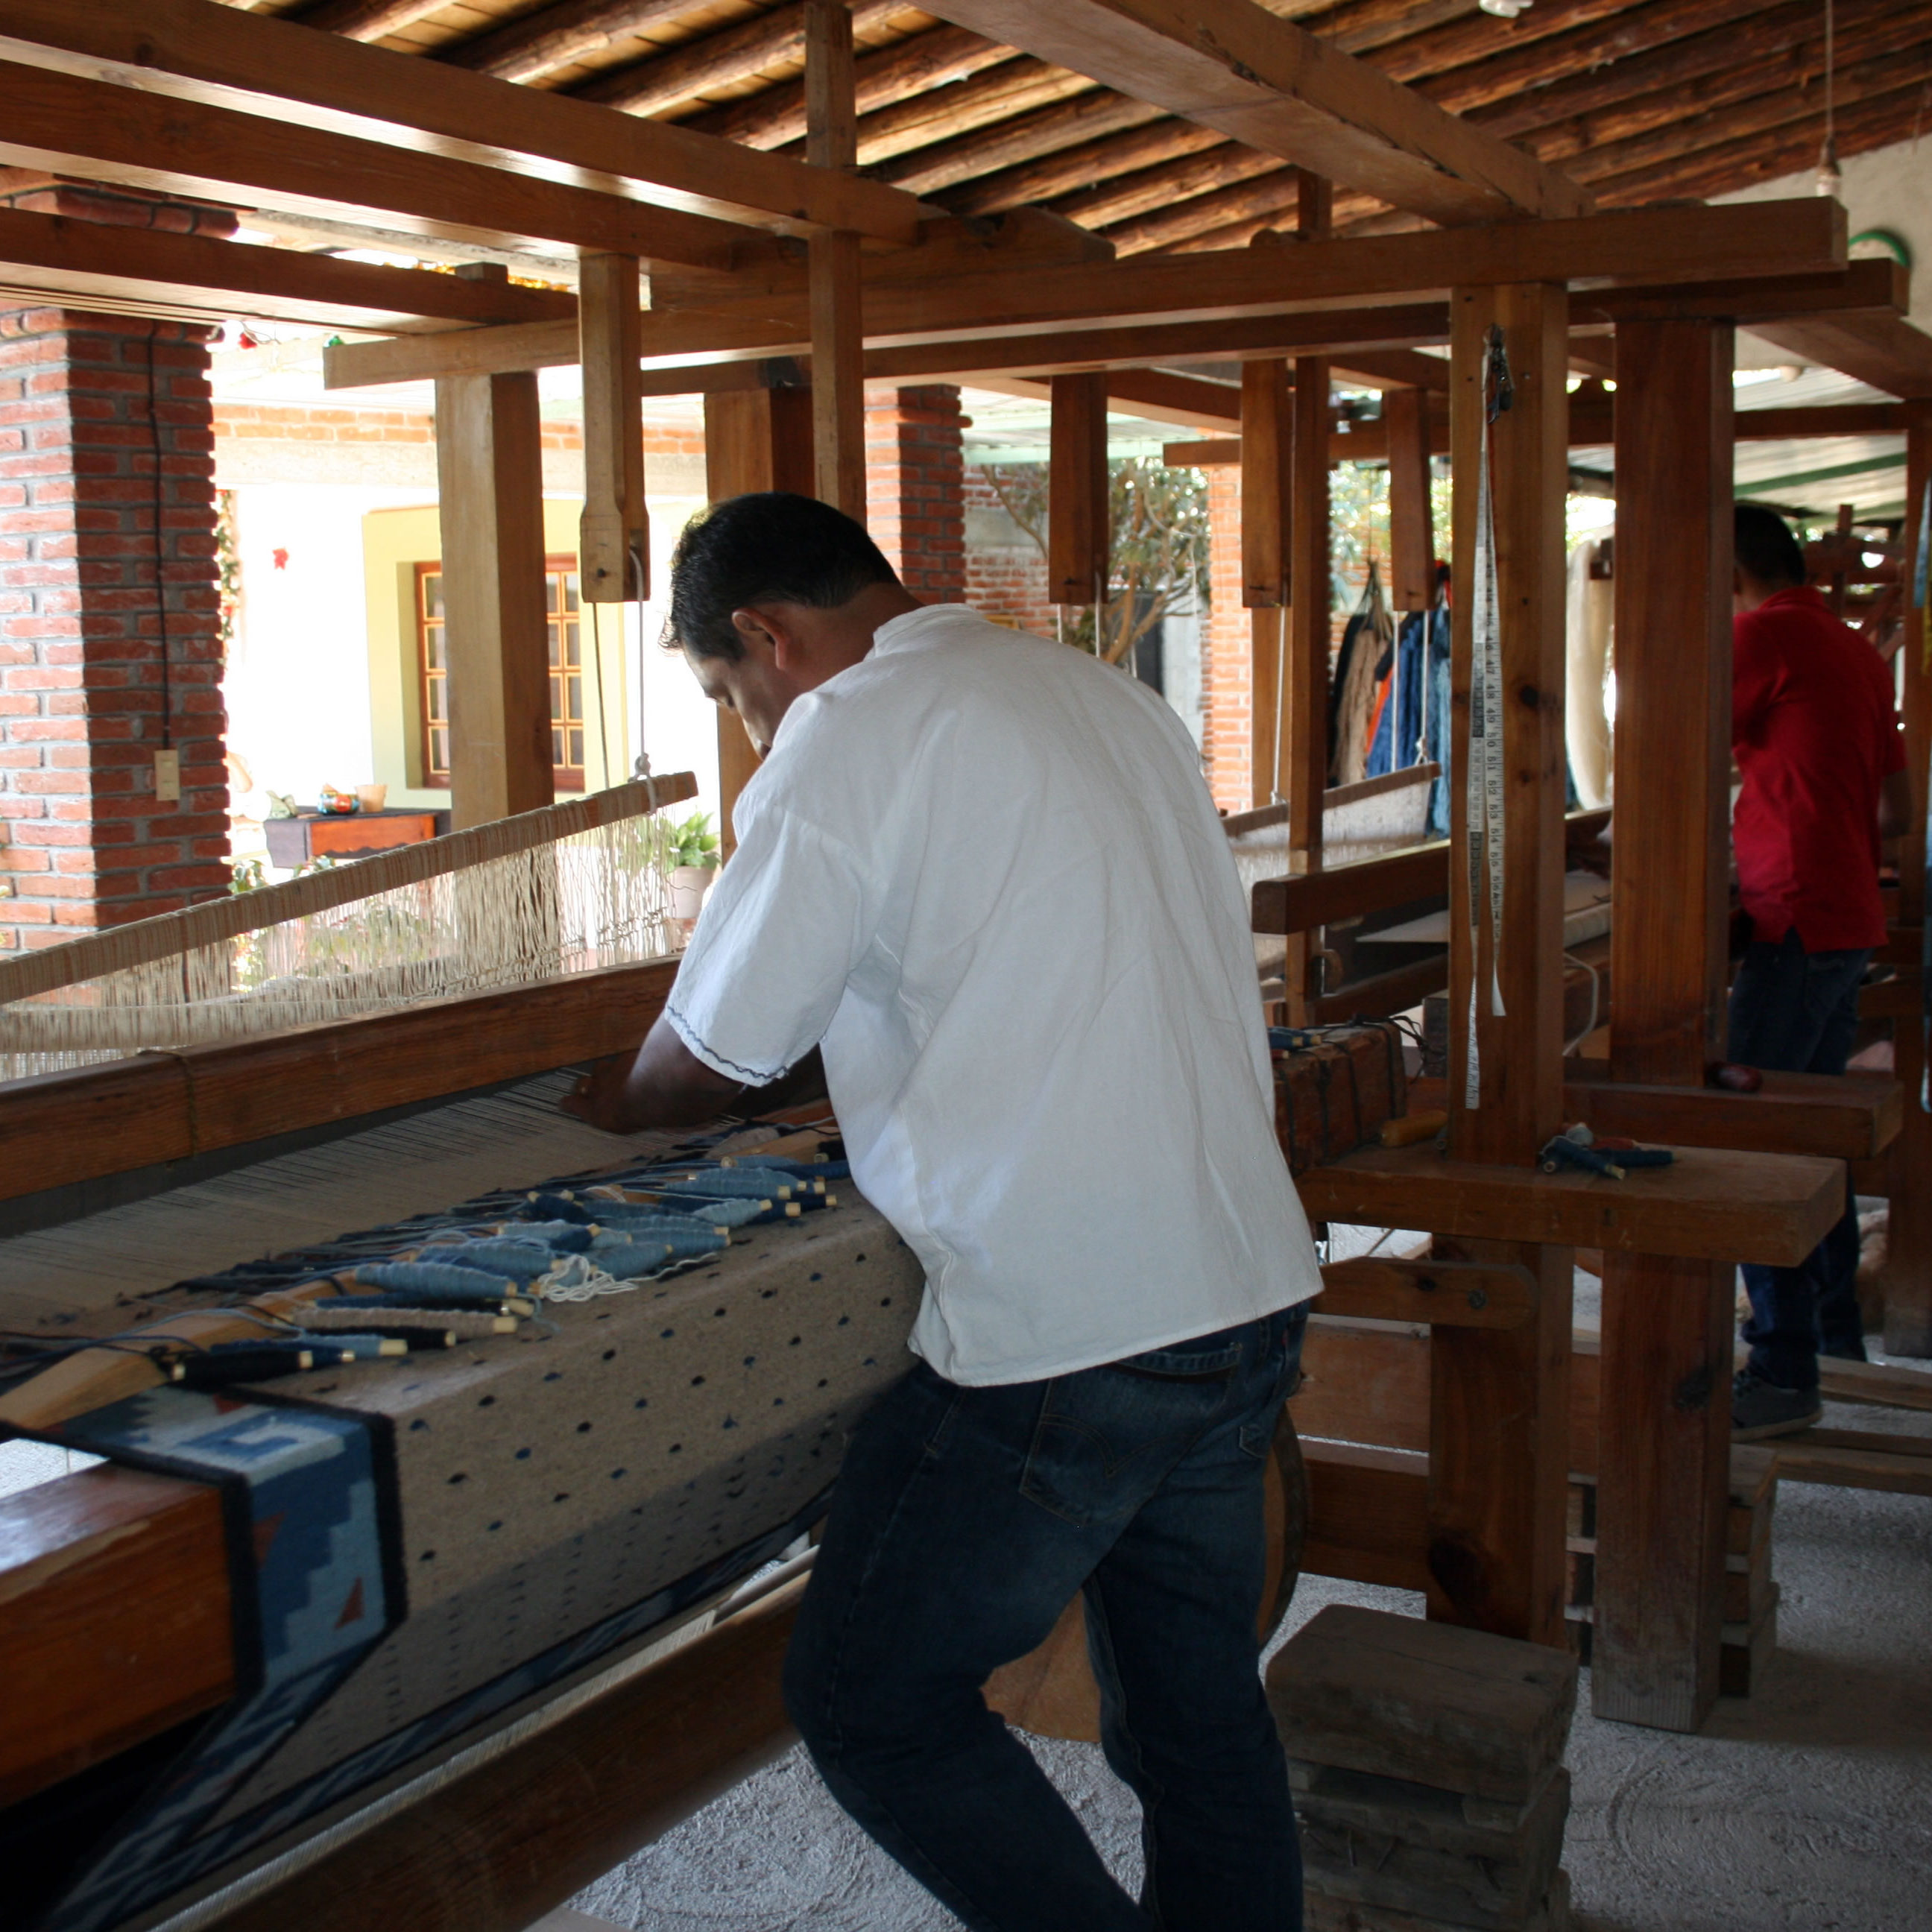 Workers at El Tono de la Cochinilla